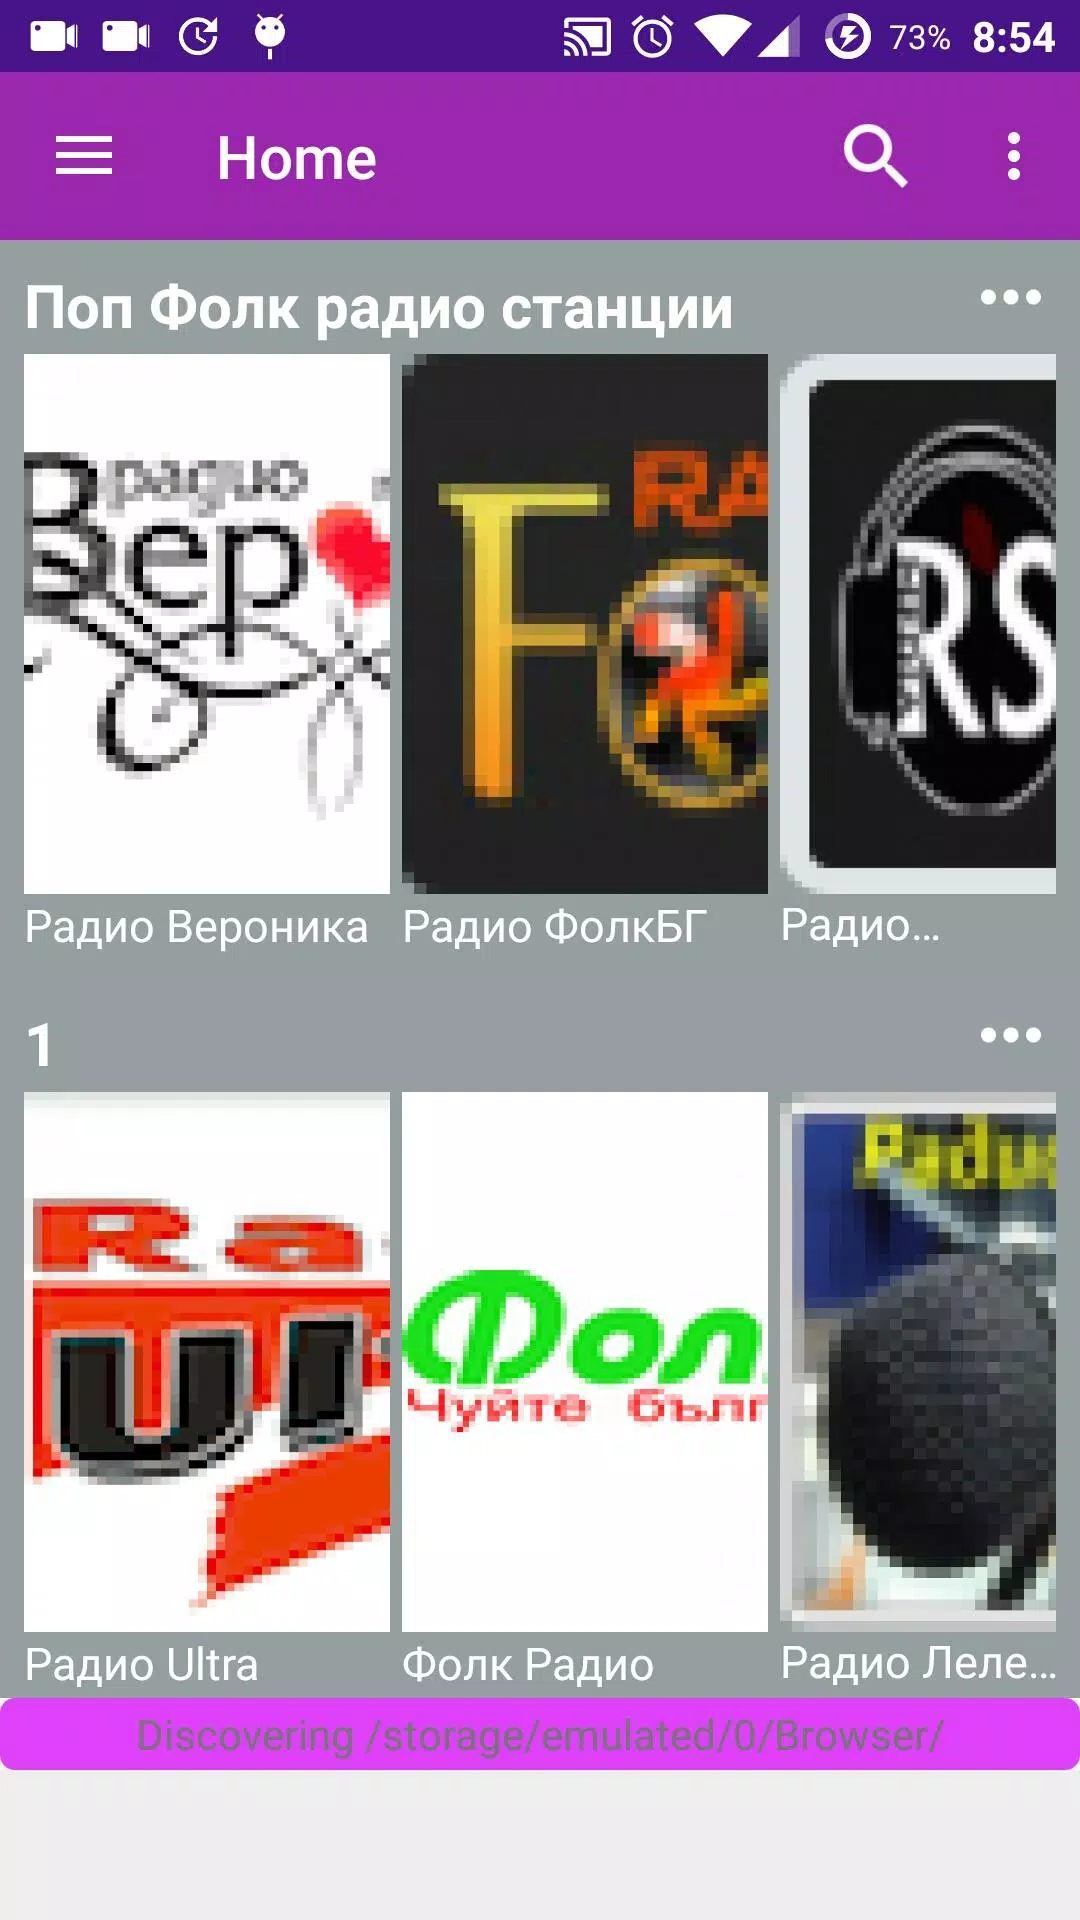 Чалга радио. Поп фолк радио станции. APK voor Android Download